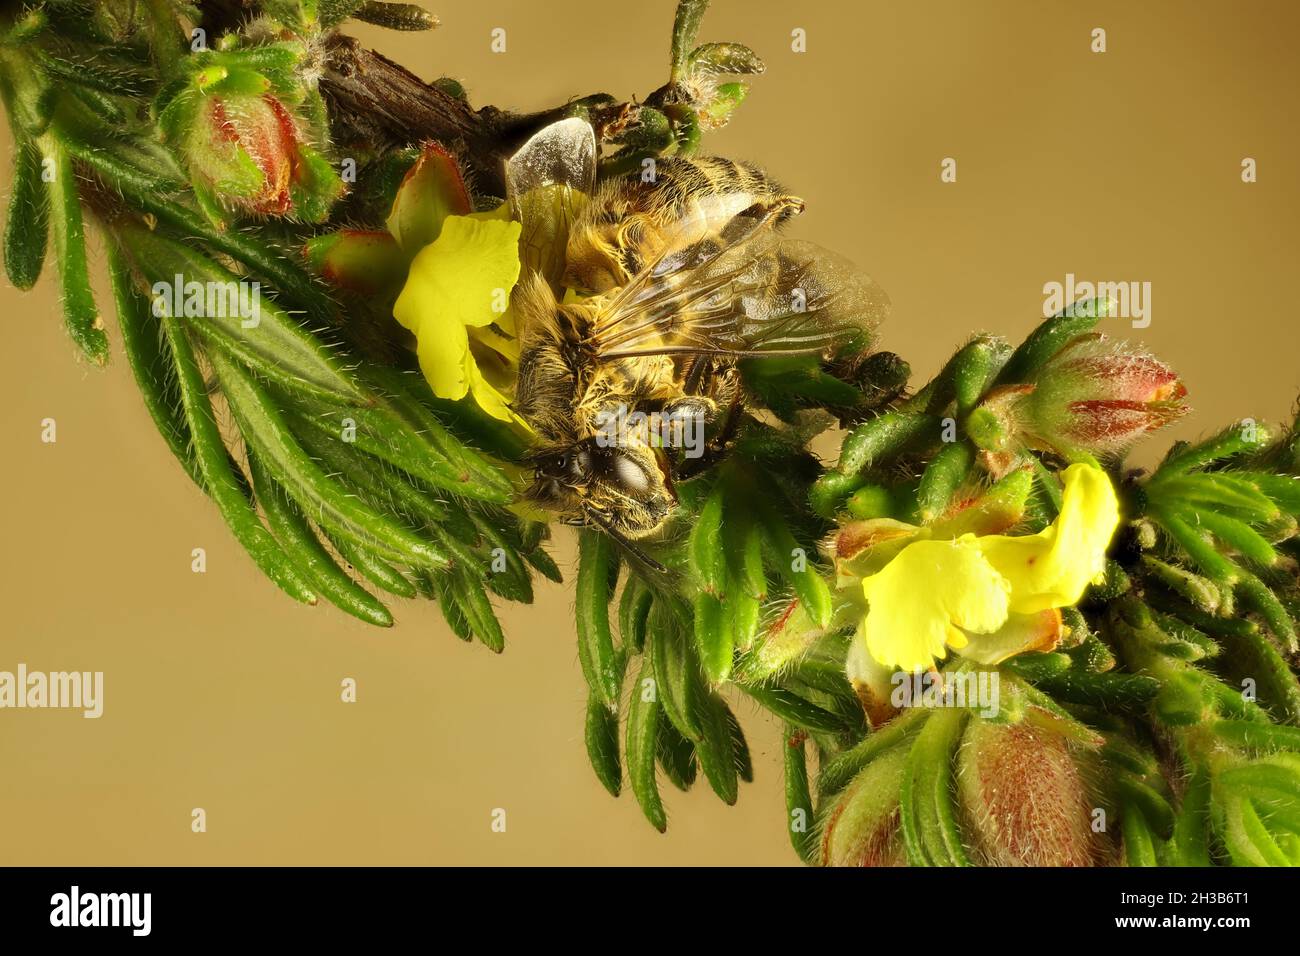 Vue macro de l'abeille occidentale (APIs mellifera) sur tige de fleur de Guinée soyeuse (Hibbertia sericea), Australie méridionale Banque D'Images